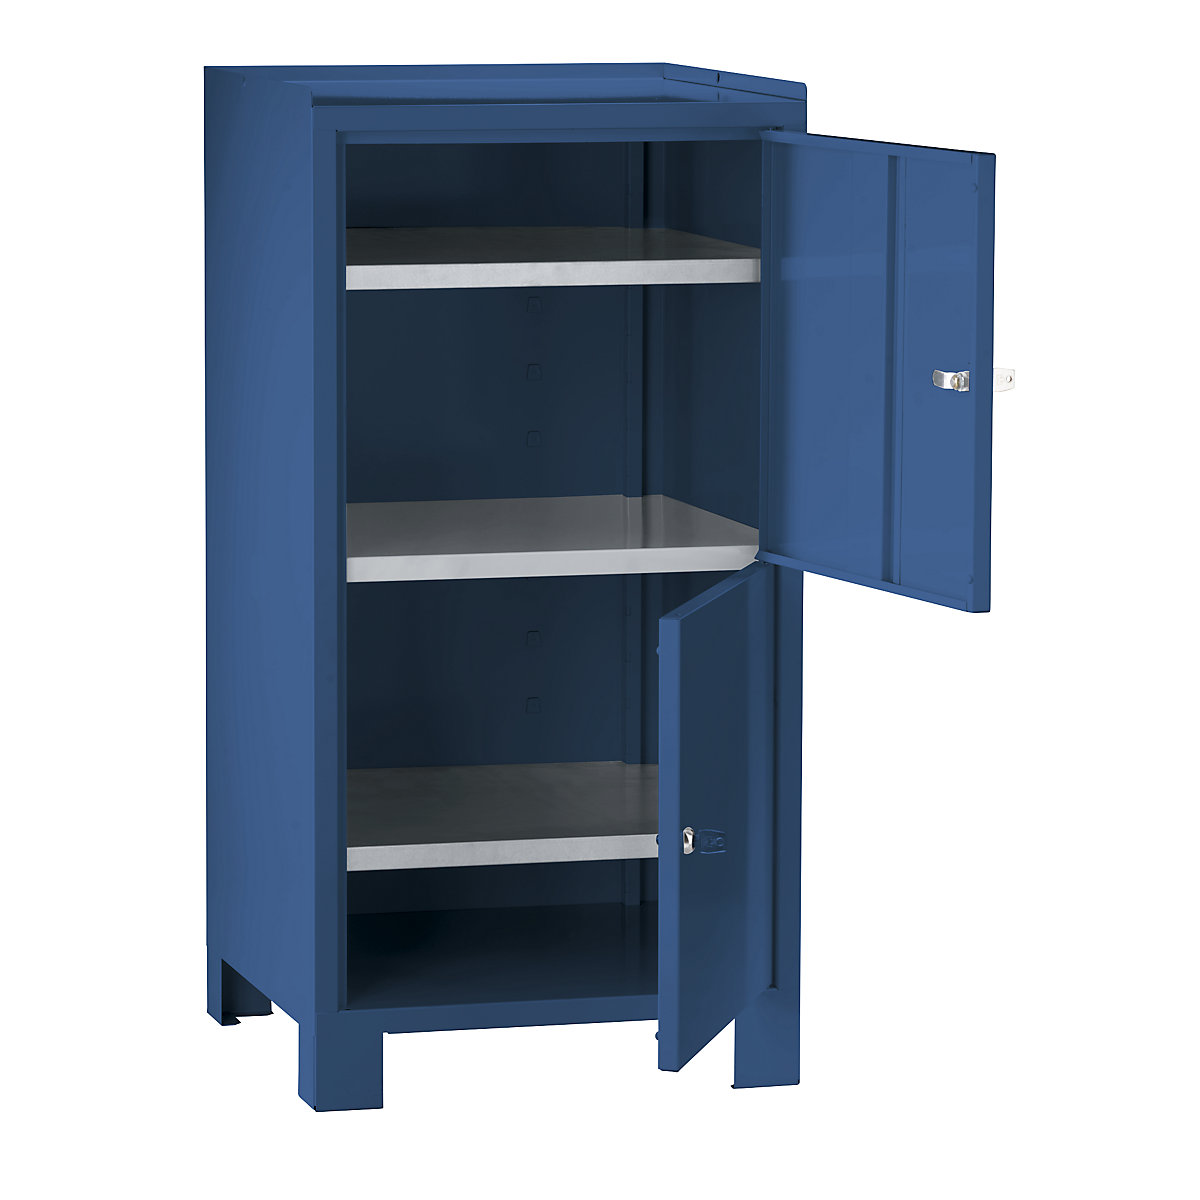 Armário para ferramentas com pés – Wolf, AxLxP 1000 x 500 x 500 mm, 2 compartimentos fecháveis com 1 prateleira cada, azul brilhante RAL 5007-11